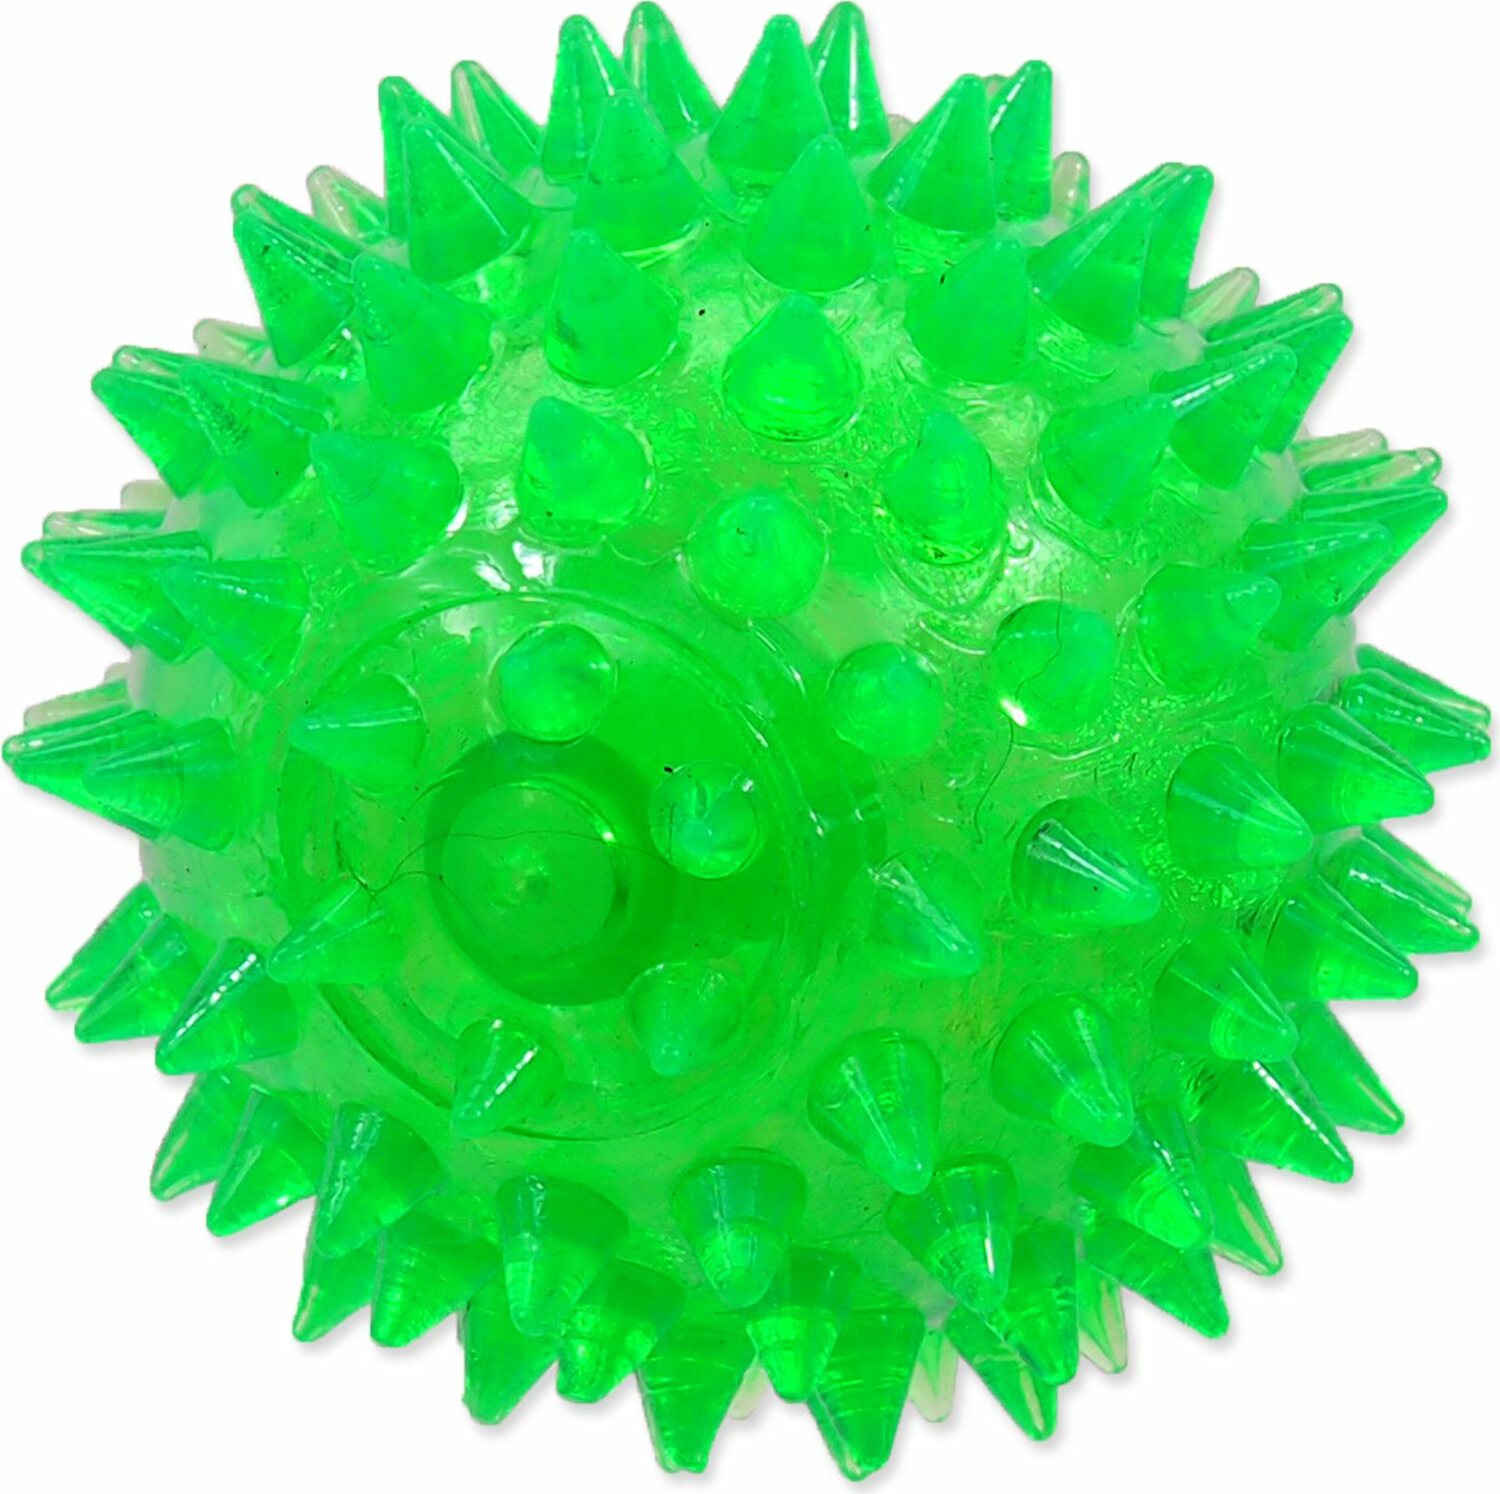 Hračka Dog Fantasy míč pískací zelený 6cm